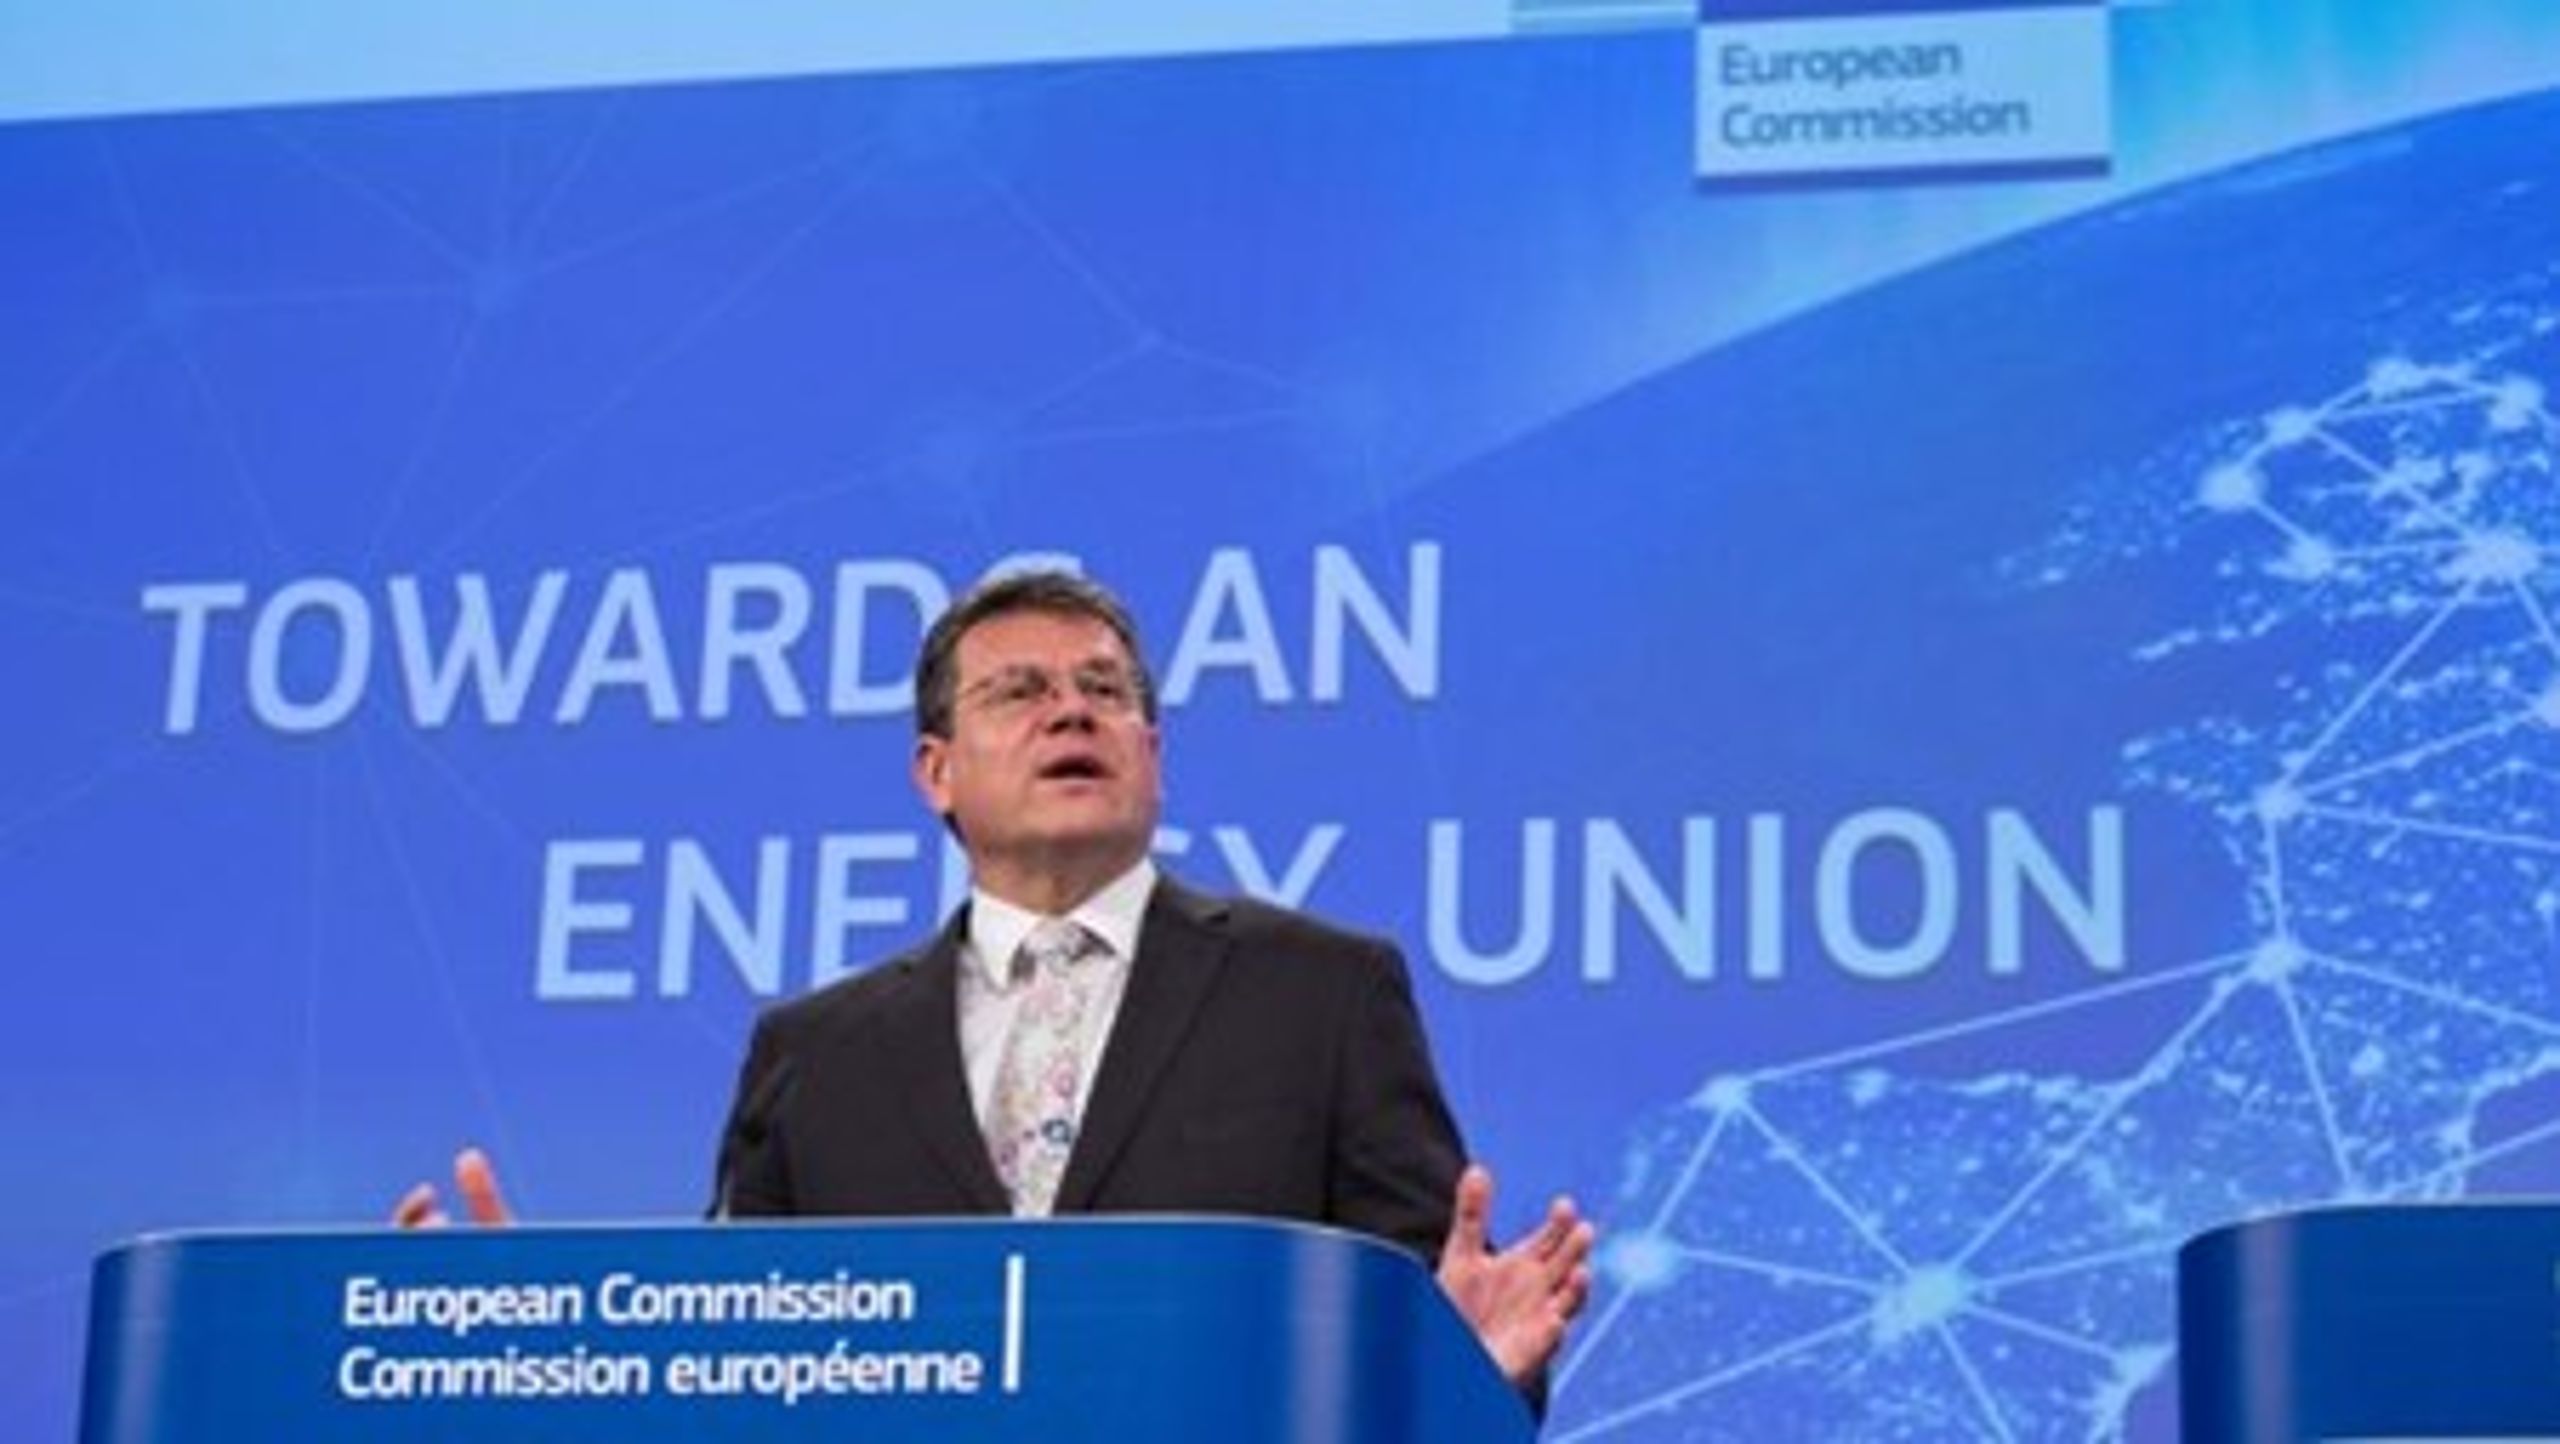 2015 var en god begyndelse, men 2016 bliver året, hvor vi kommer til at se fremskridt, lød det fra EU-kommissær&nbsp;Maros Sefcovic i forbindelse med&nbsp;hans "state of the energi union".&nbsp;